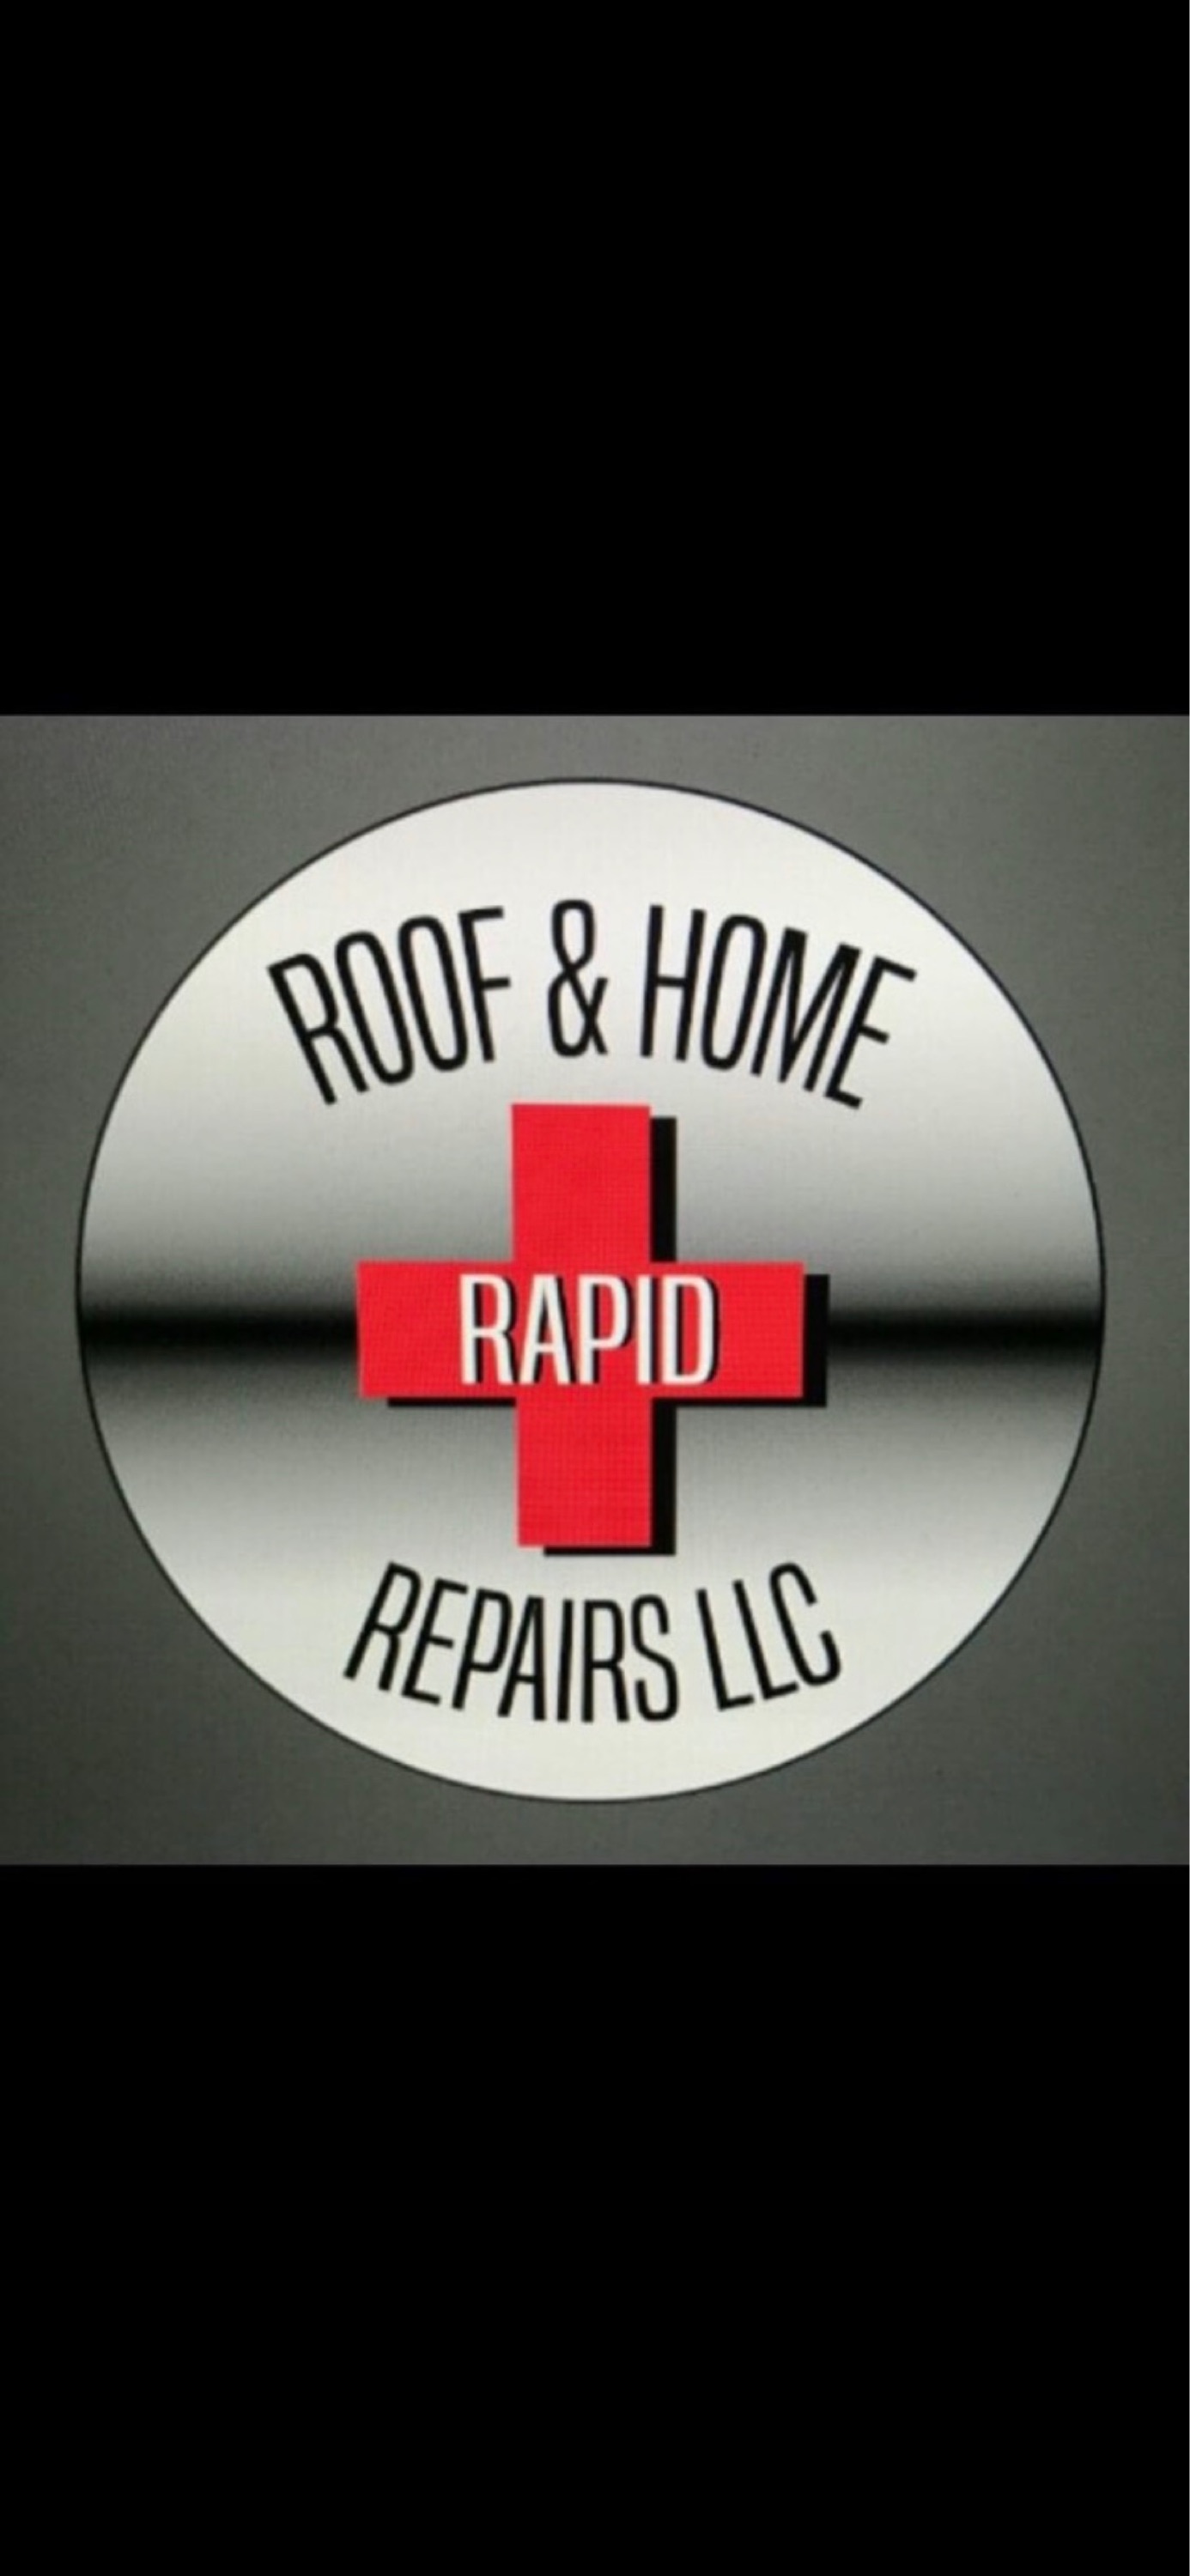 Rapid Roof & Home Repairs LLC Logo